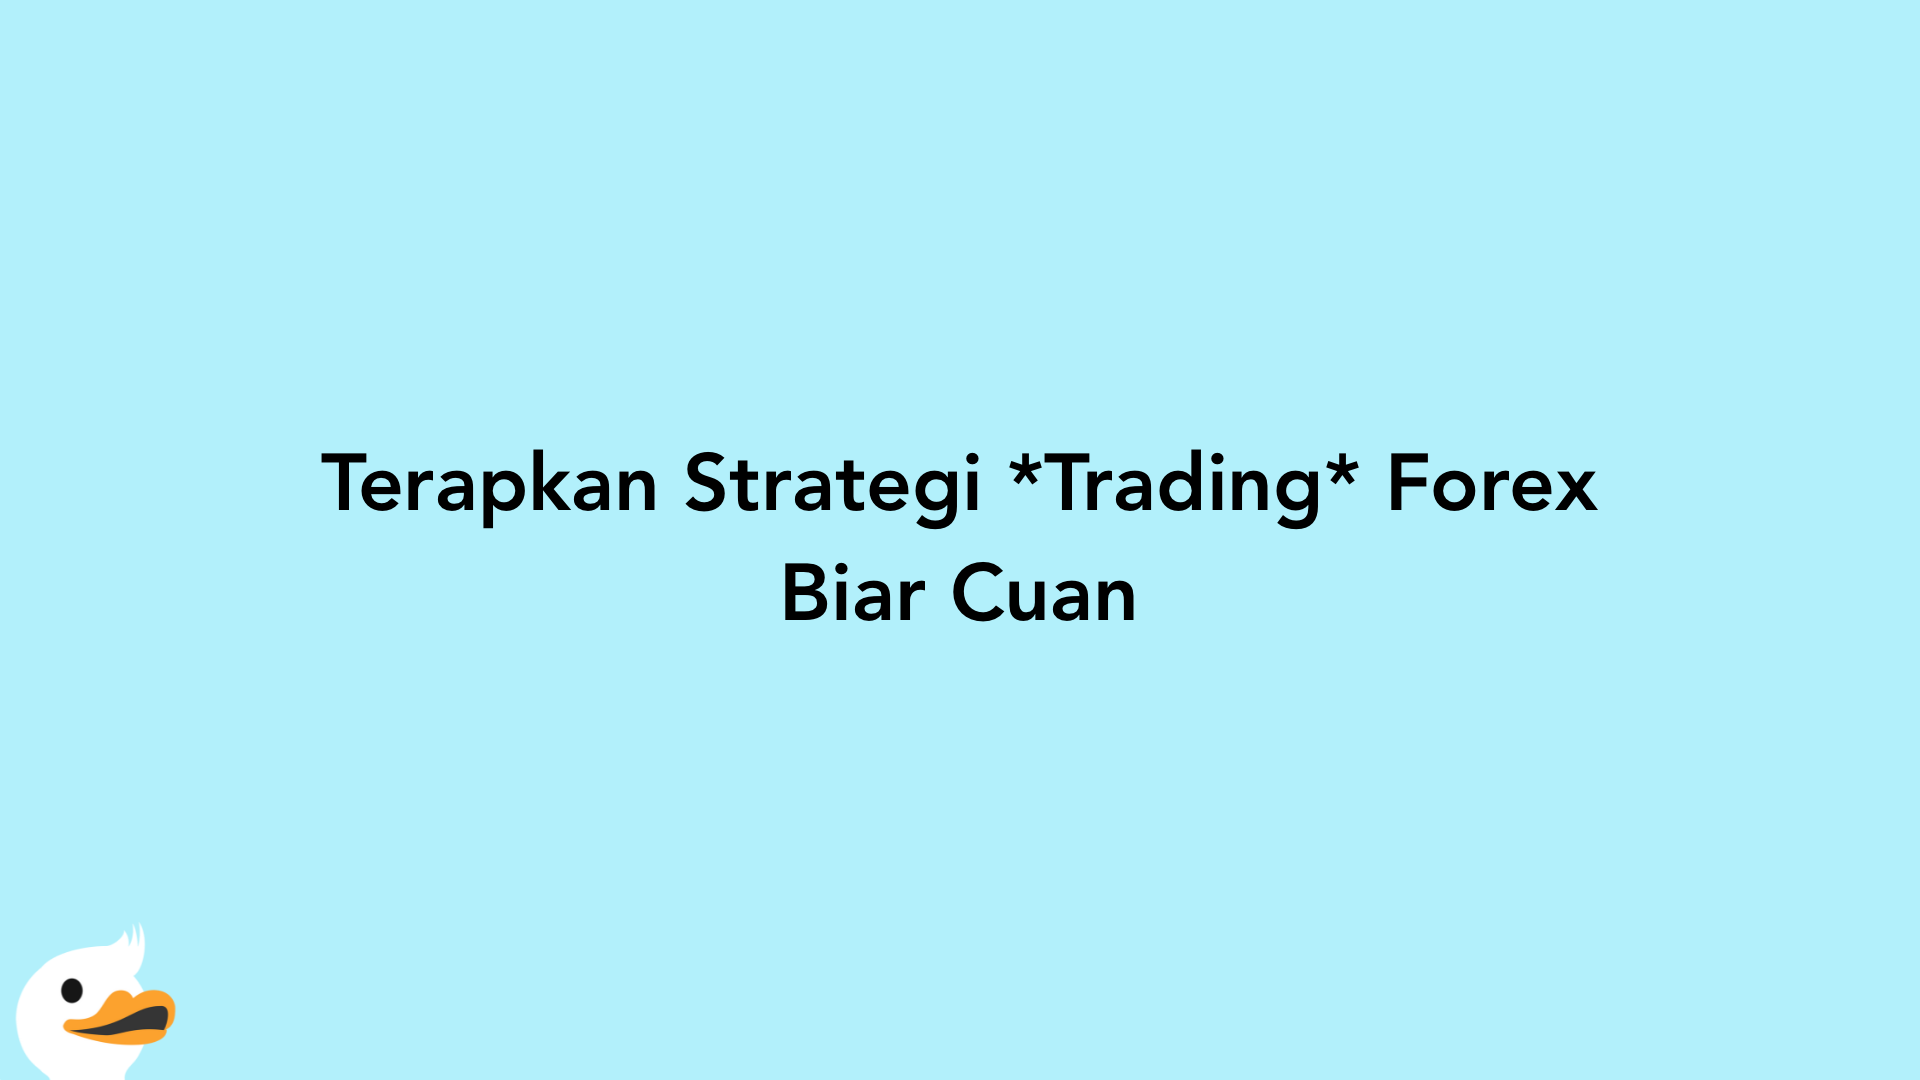 Terapkan Strategi Trading Forex Biar Cuan